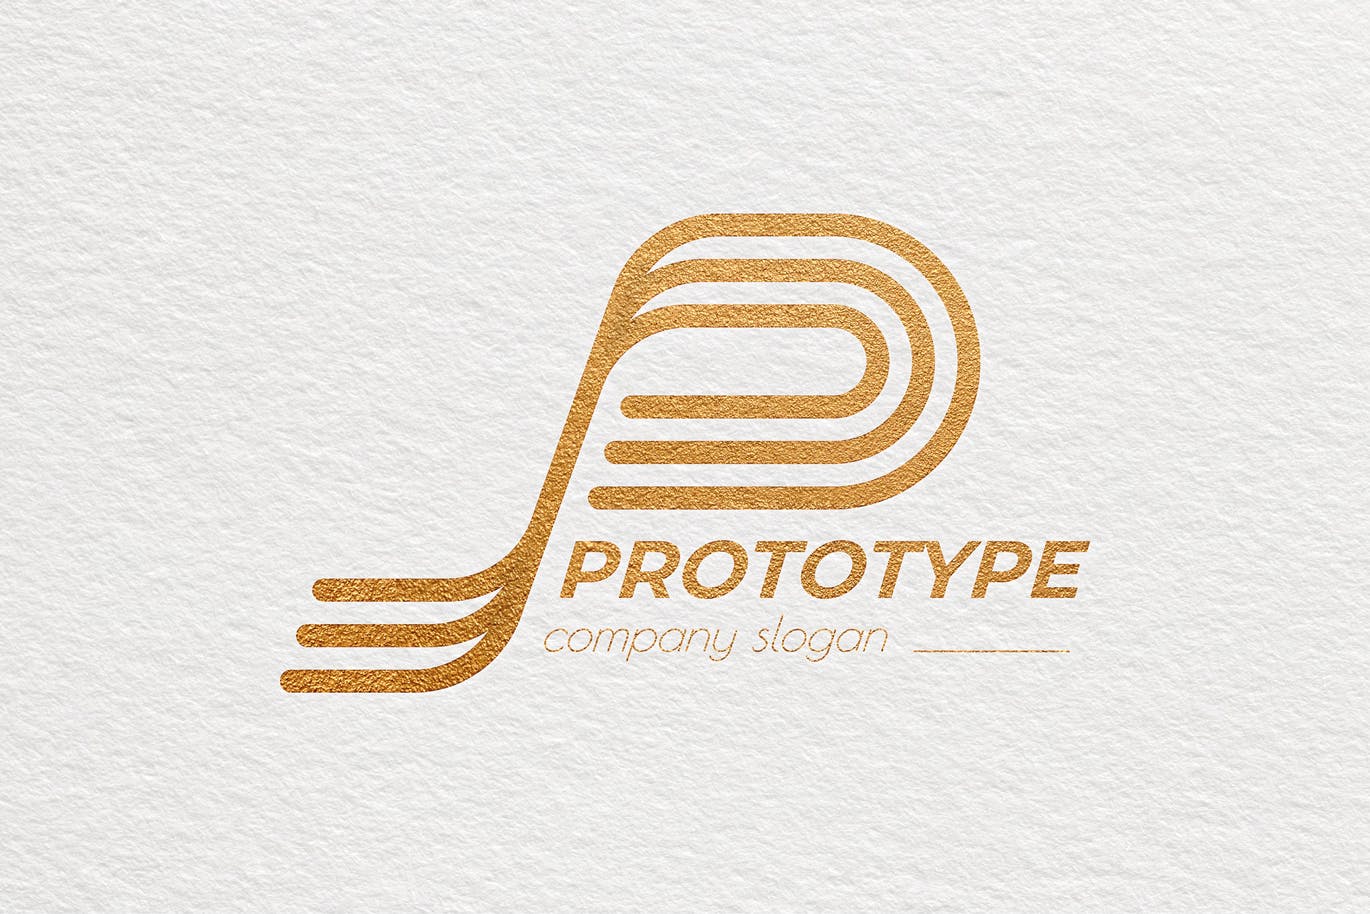 原型设计主题创意图形Logo设计普贤居精选模板 Prototype Creative Logo Template插图(3)